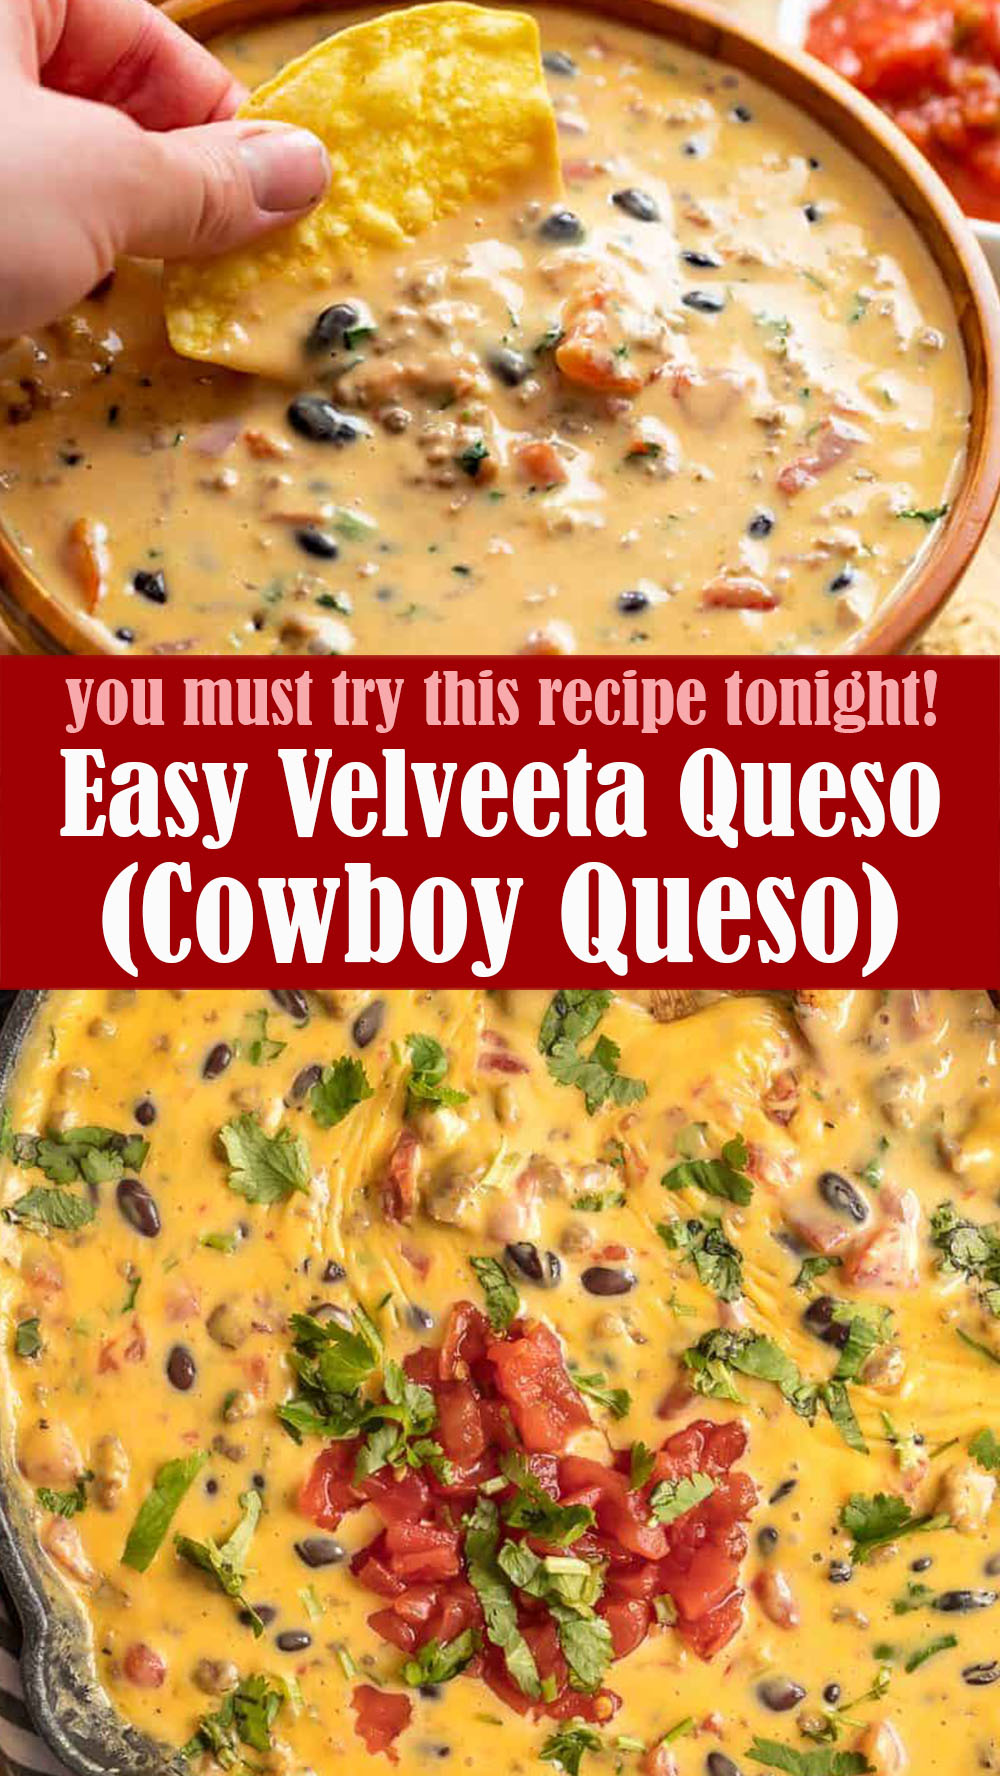 Easy Velveeta Queso (Cowboy Queso)